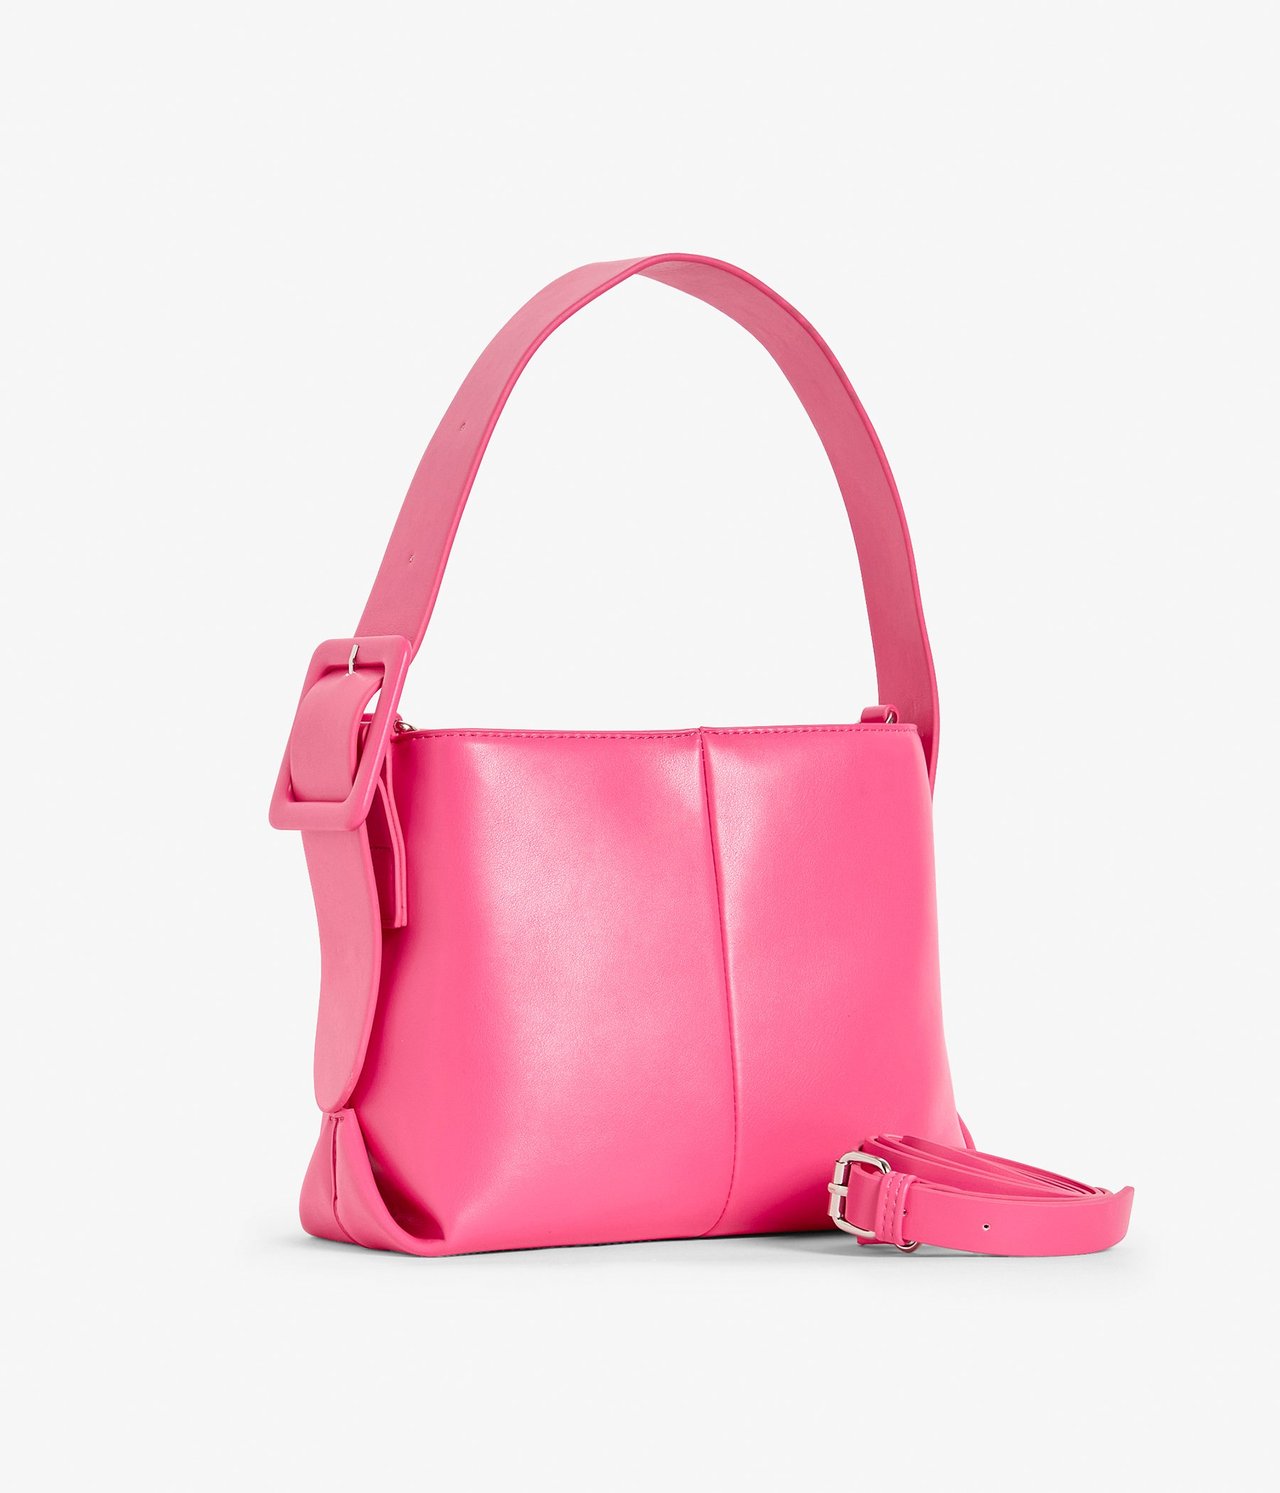 Käsilaukku Pinkki - ONE SIZE - 0